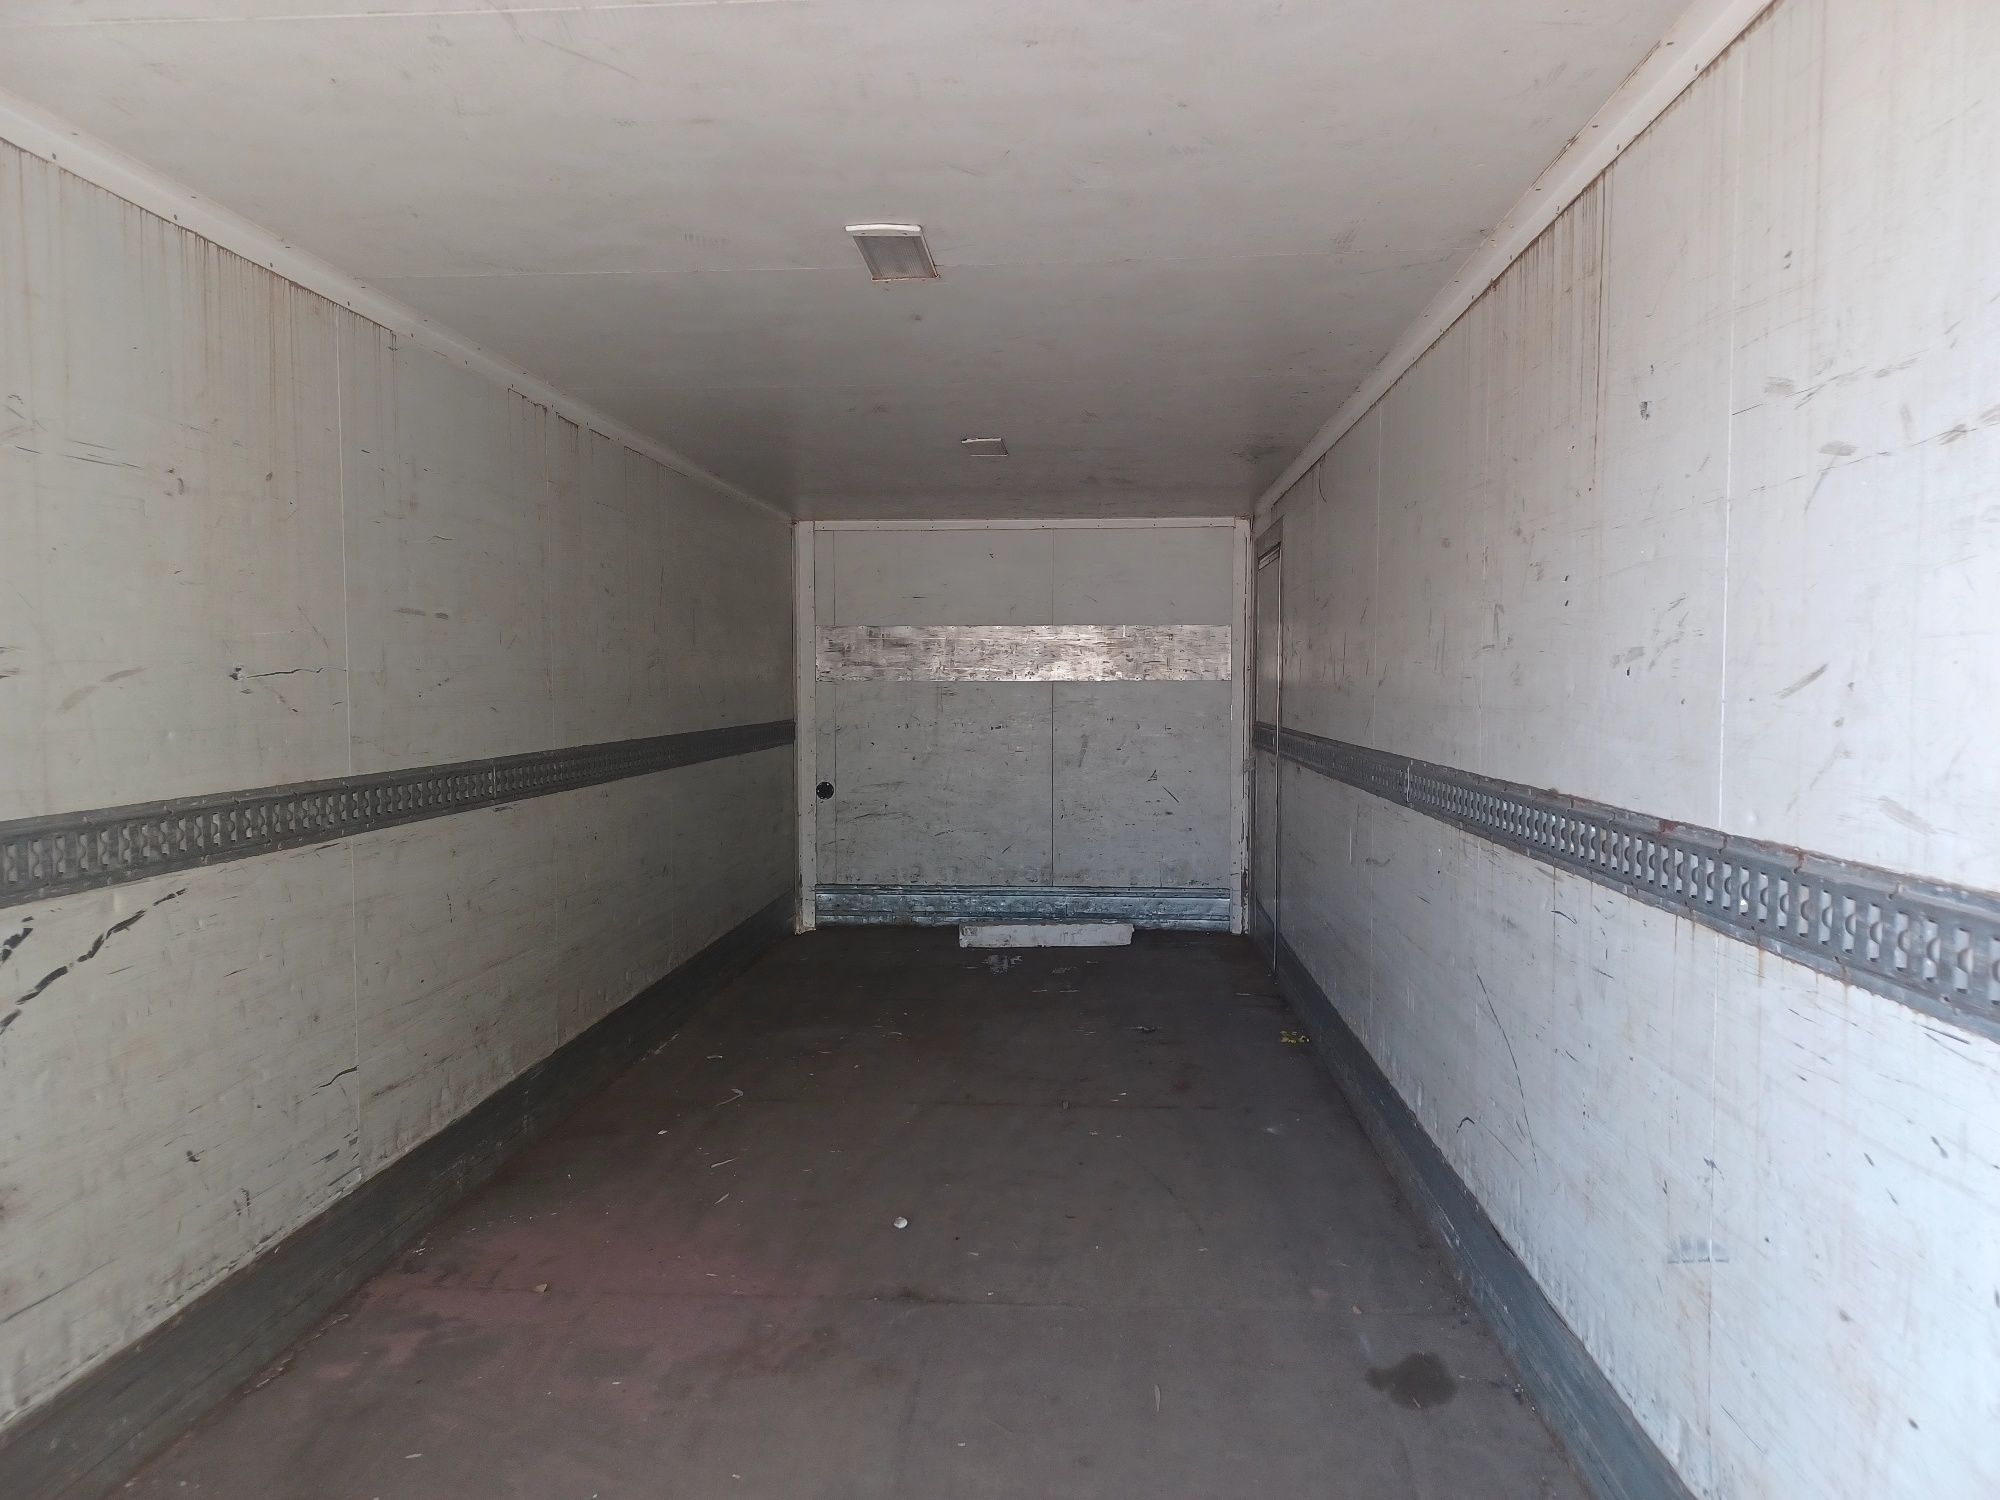 Kontener izoterma magazyn garaż przechowalnia 7m z transportem kilka